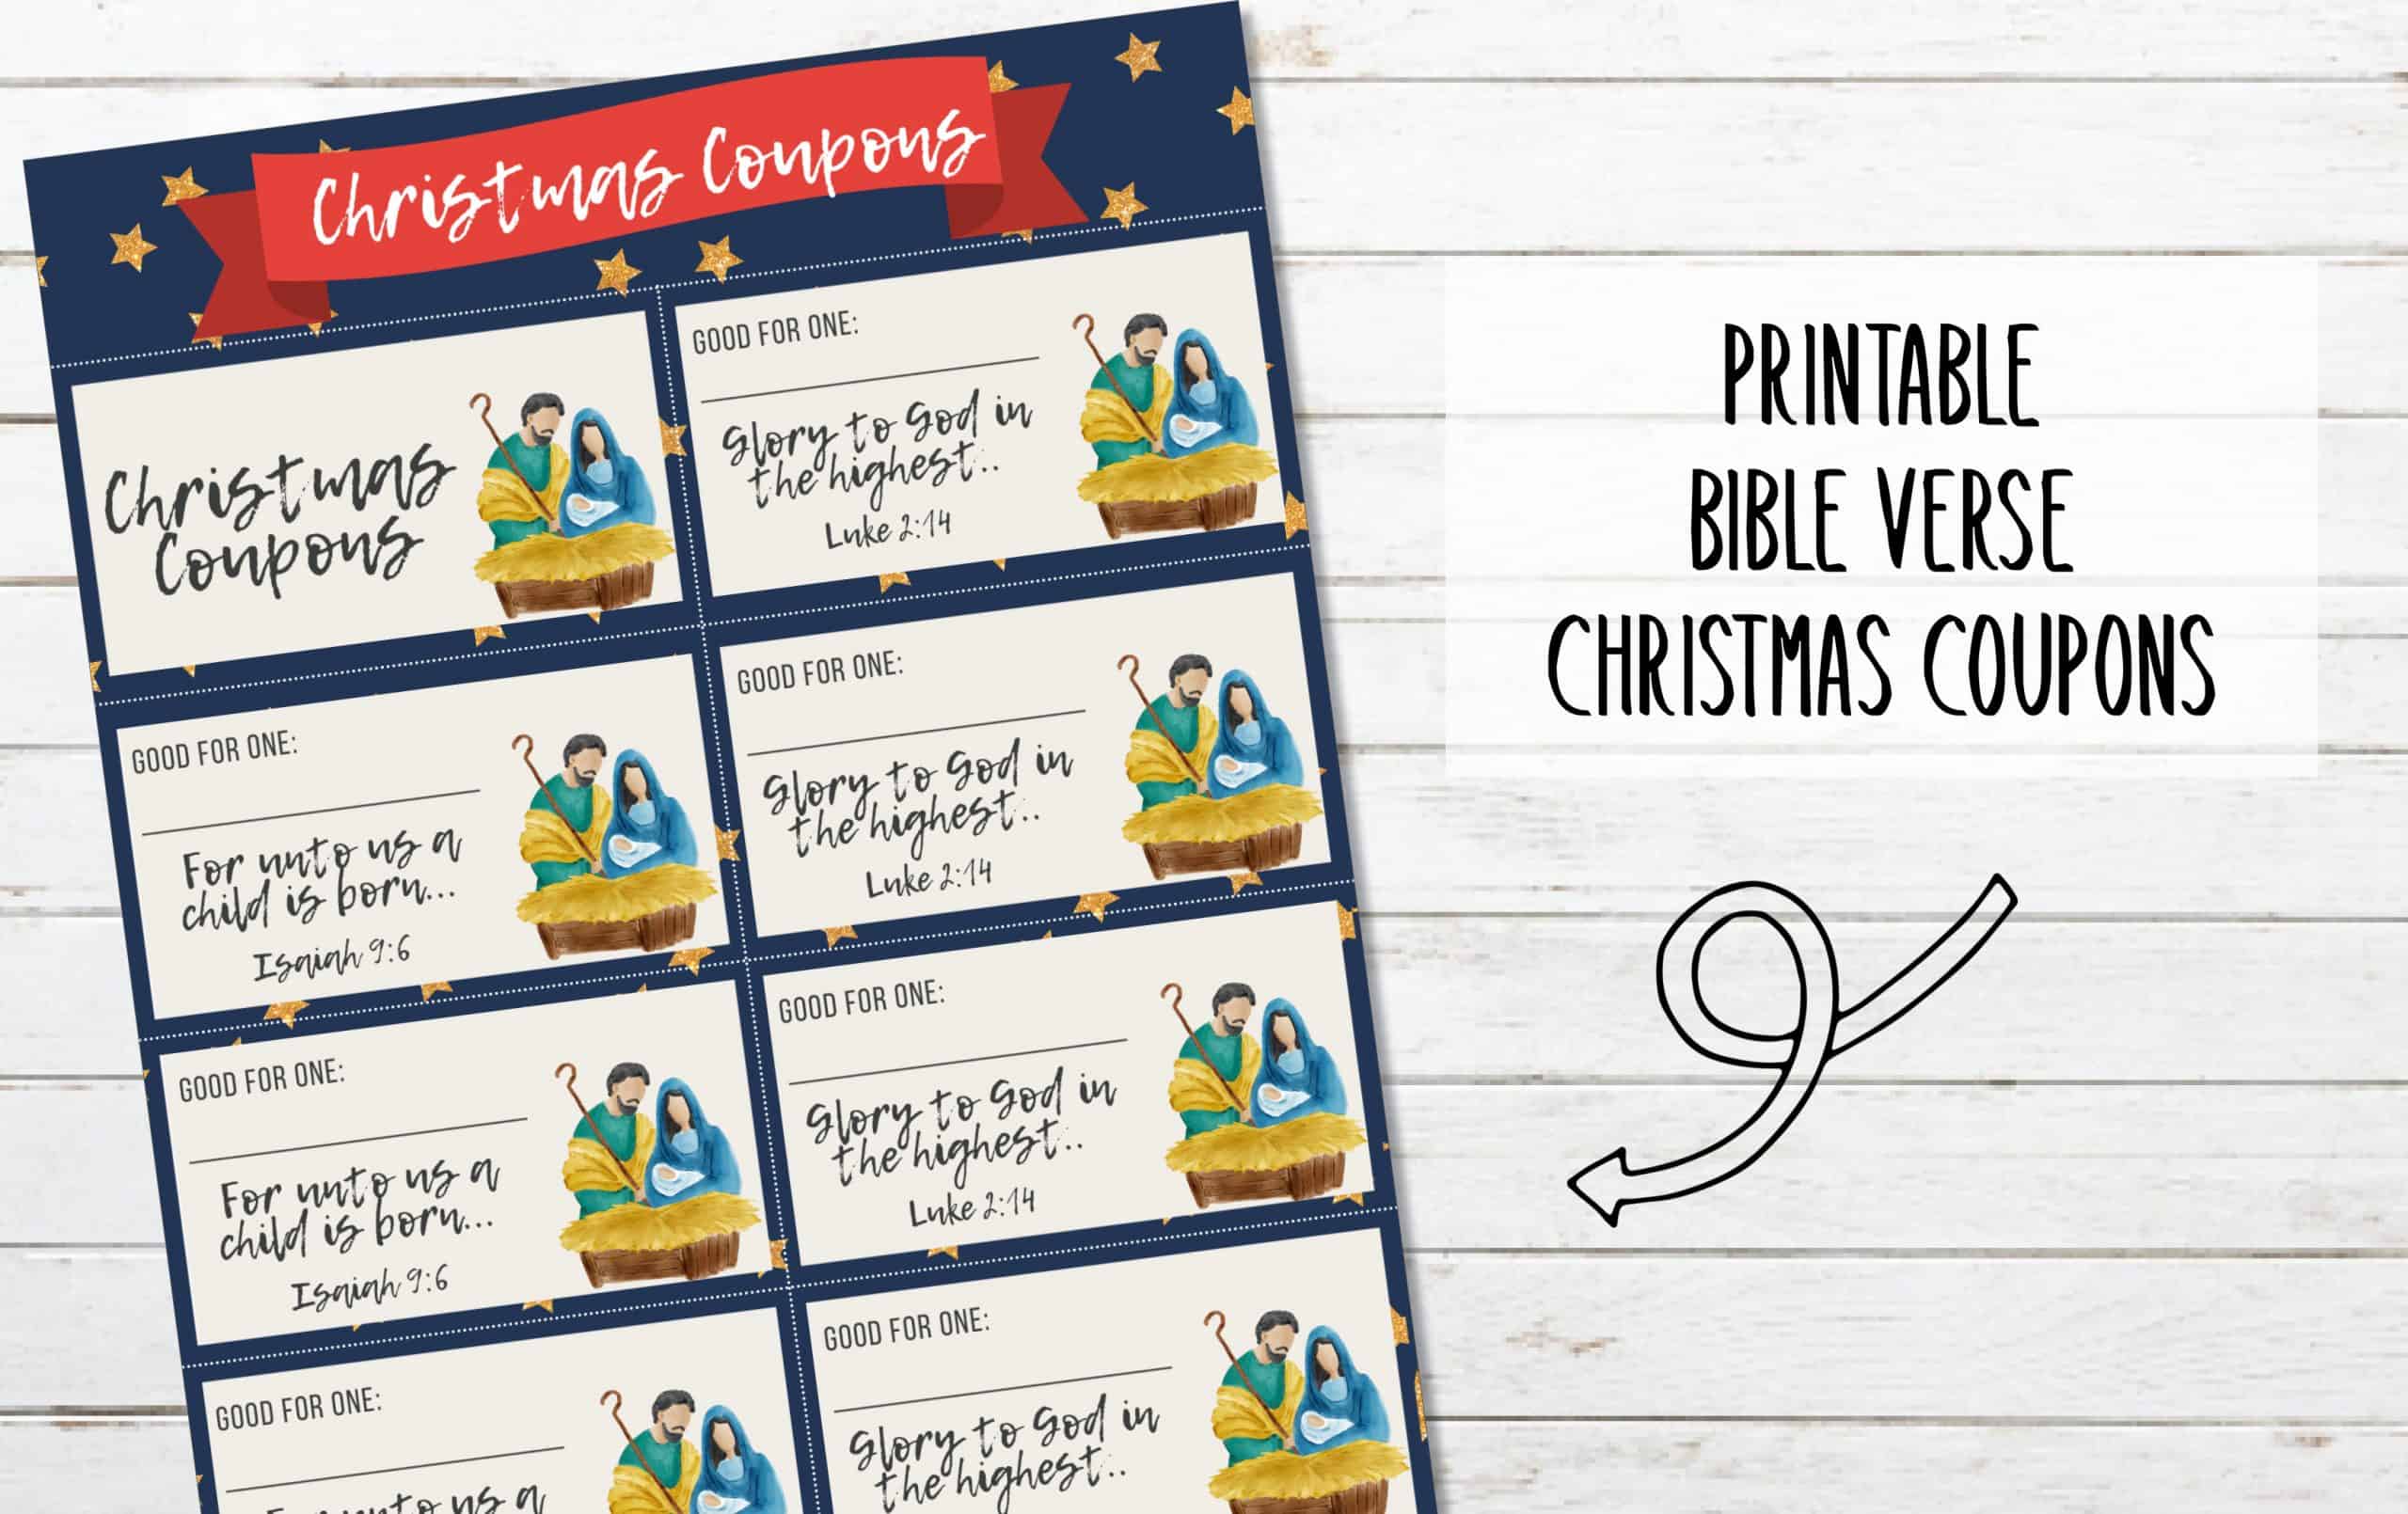 FREE Printable Bible Verse Christmas Coupons